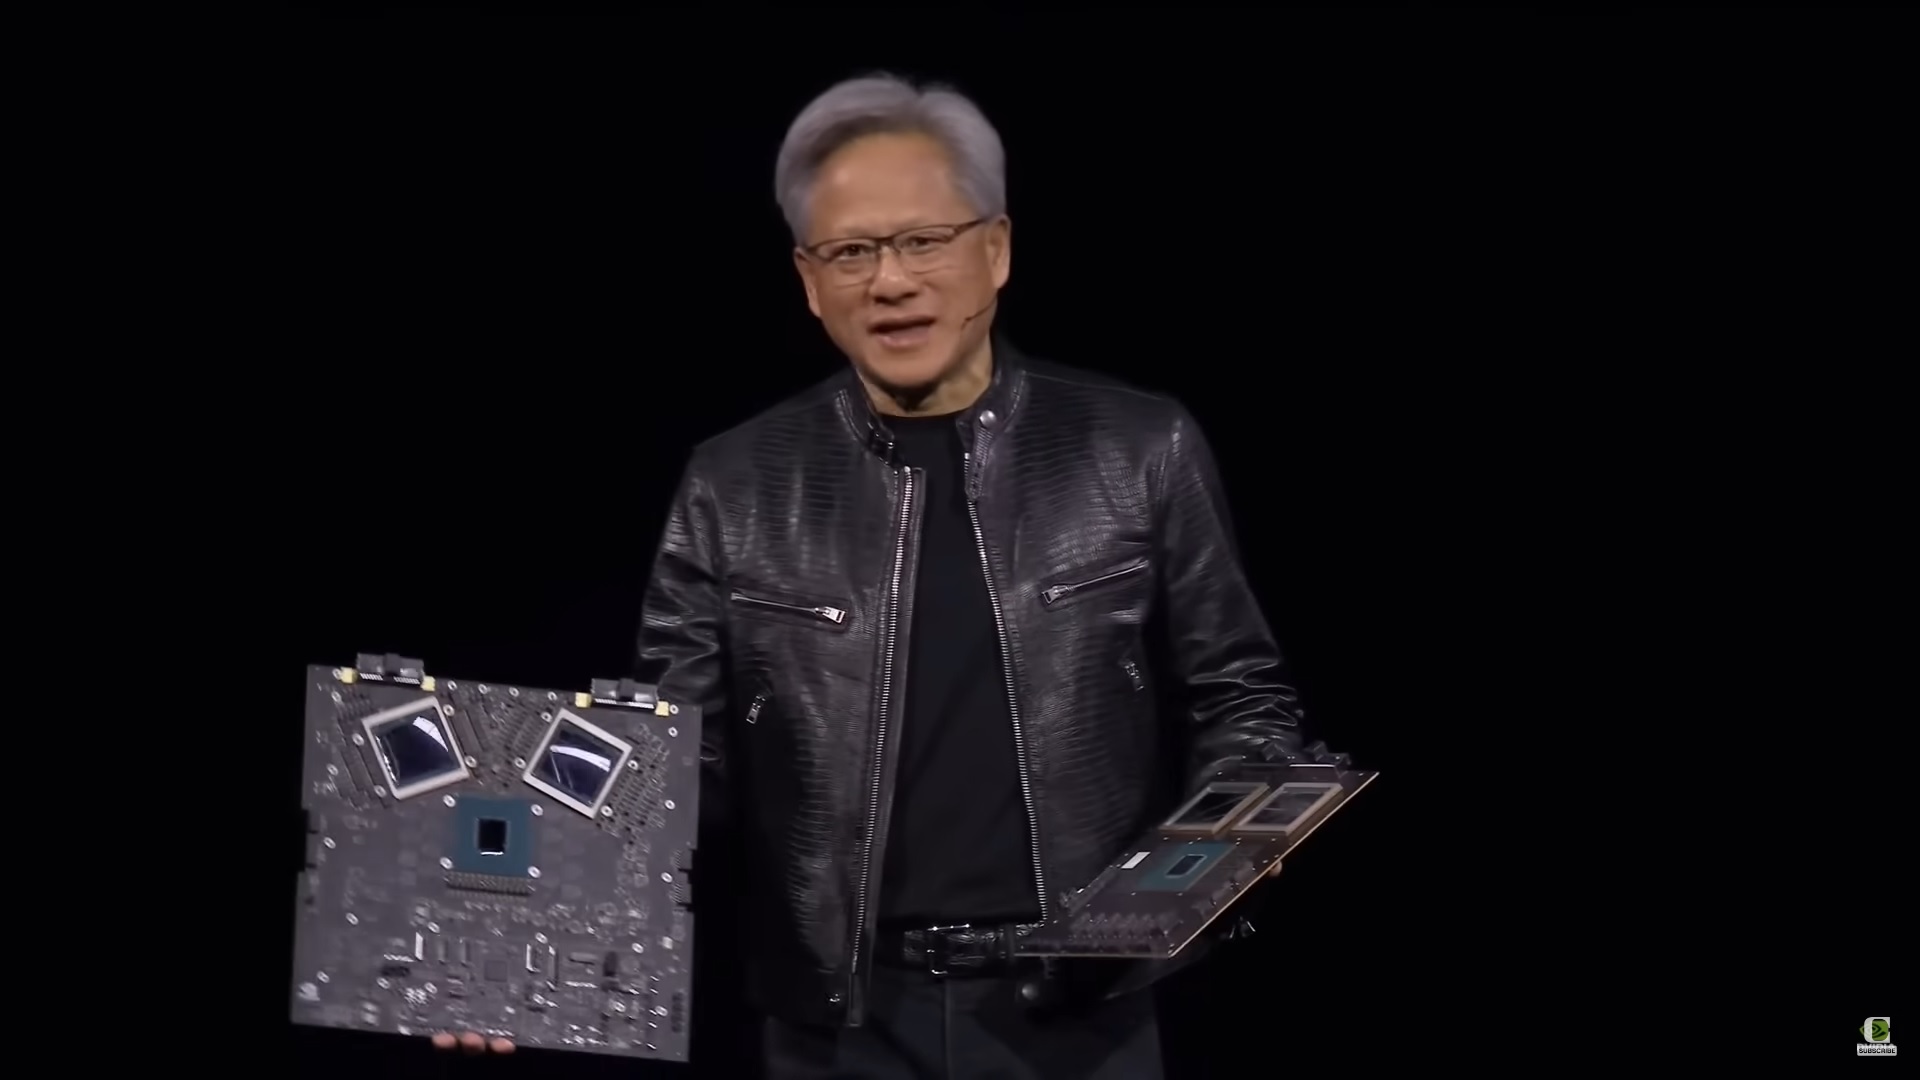 Izvršni direktor Nvidije Jensen Huang najavio je nove AI čipove.